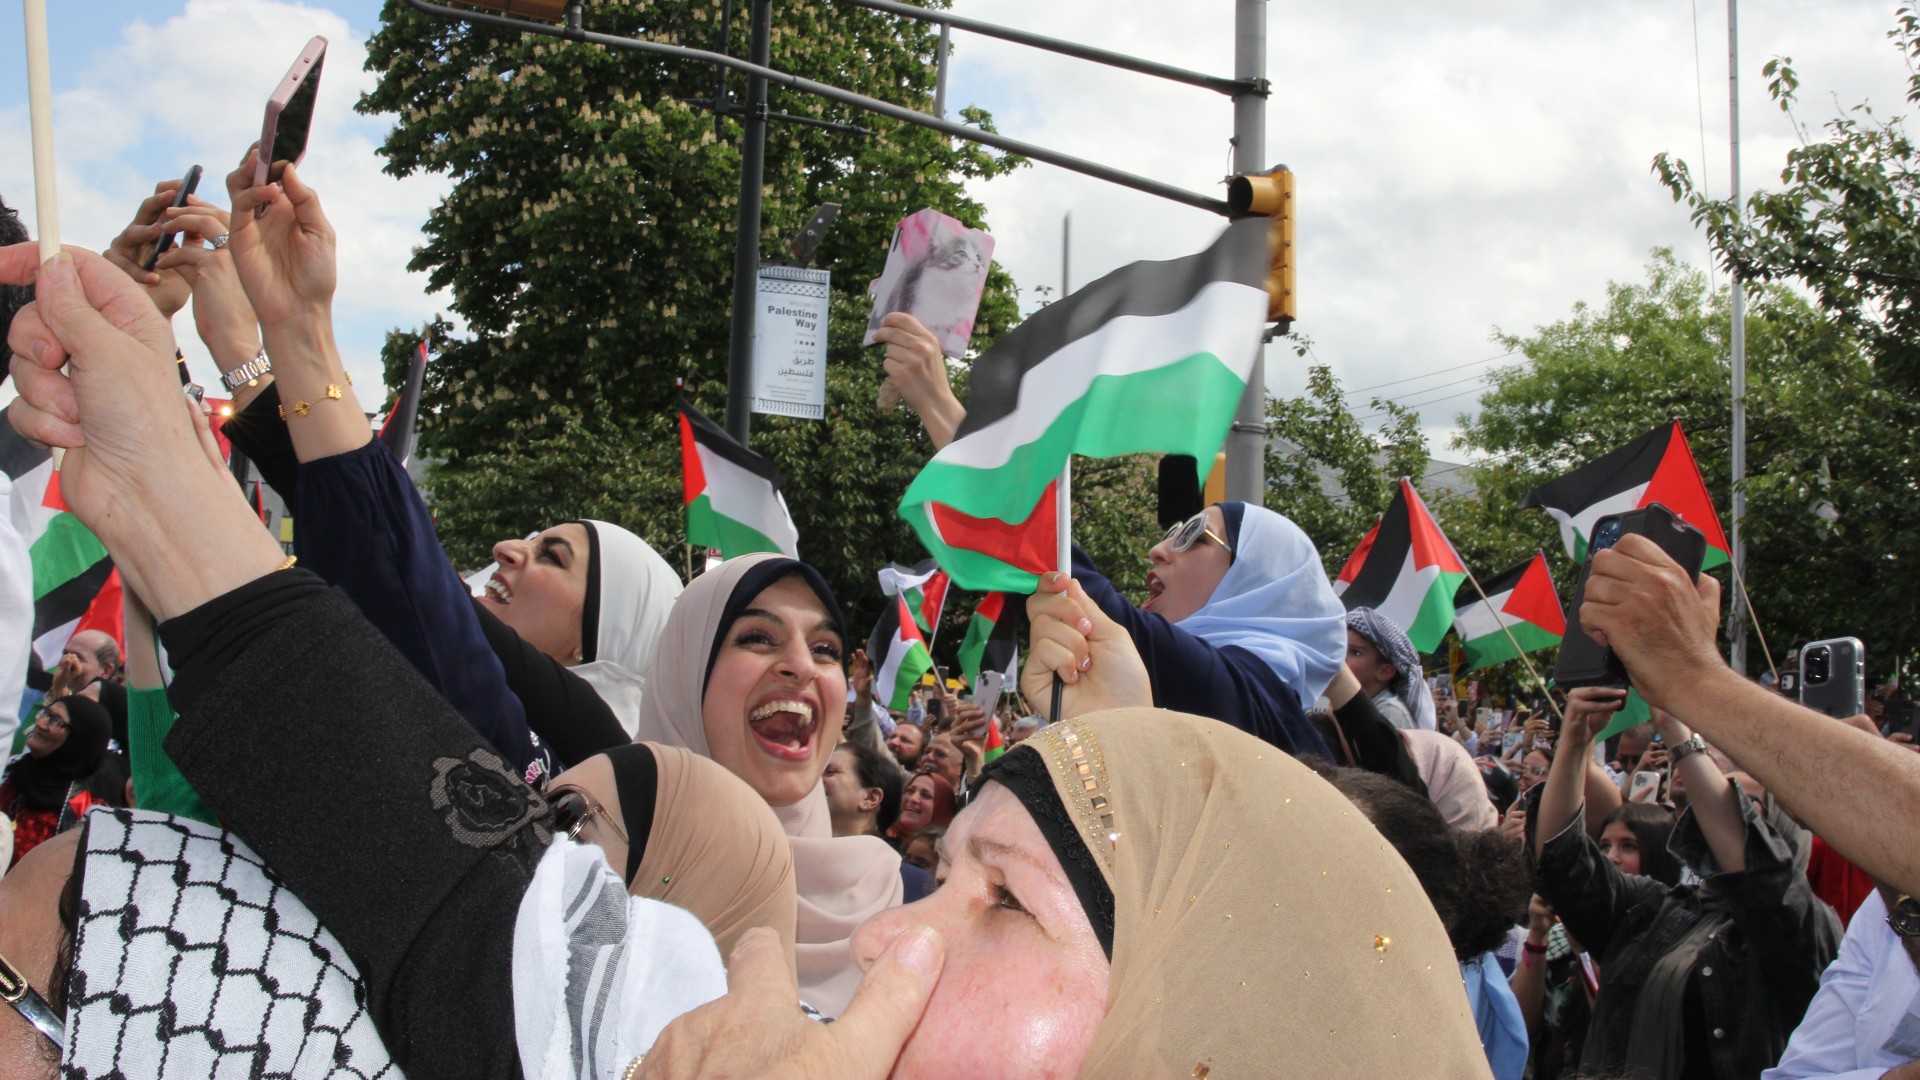 Quando il segno della "Via della Palestina" è stato svelato, molte donne hanno eseguito lo zaghrouta, un ululato distintivo che le donne arabe eseguono ai matrimoni e ad altri eventi speciali (MEE/Reem Farhat)